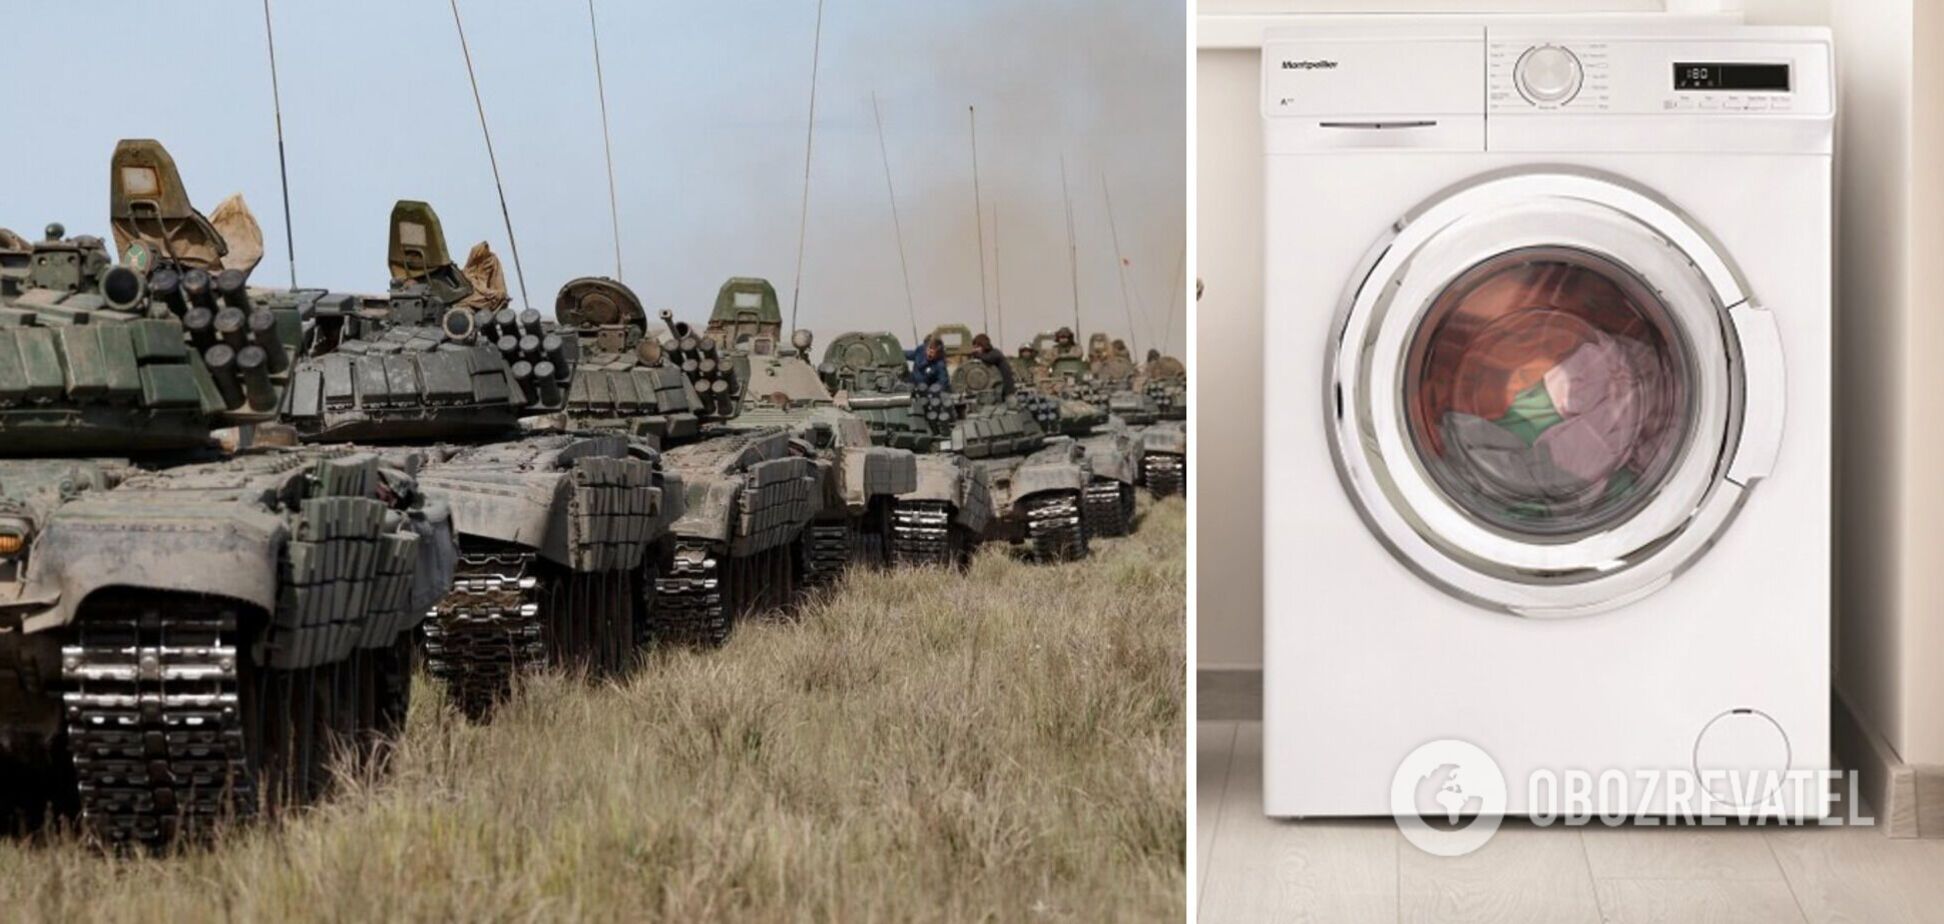 Россияне используют детали из холодильников и стиральных машин для оружия, – Ступак